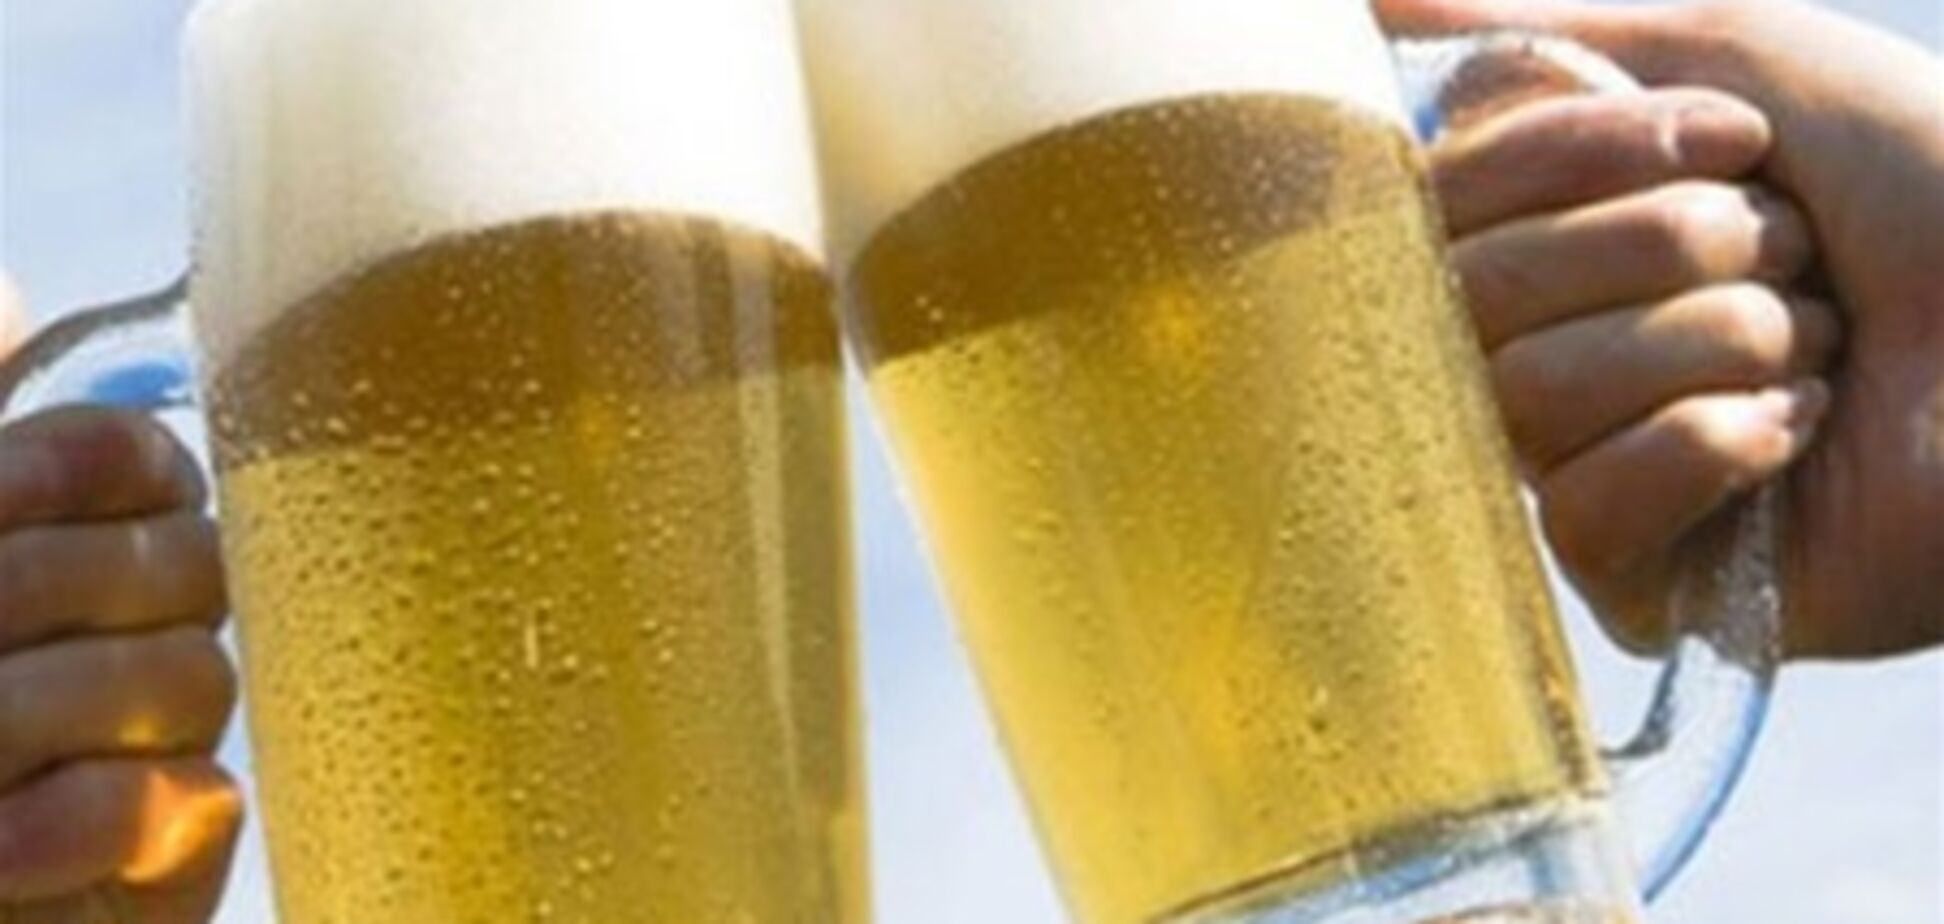 Пиво обостряет боли в желудке - врач